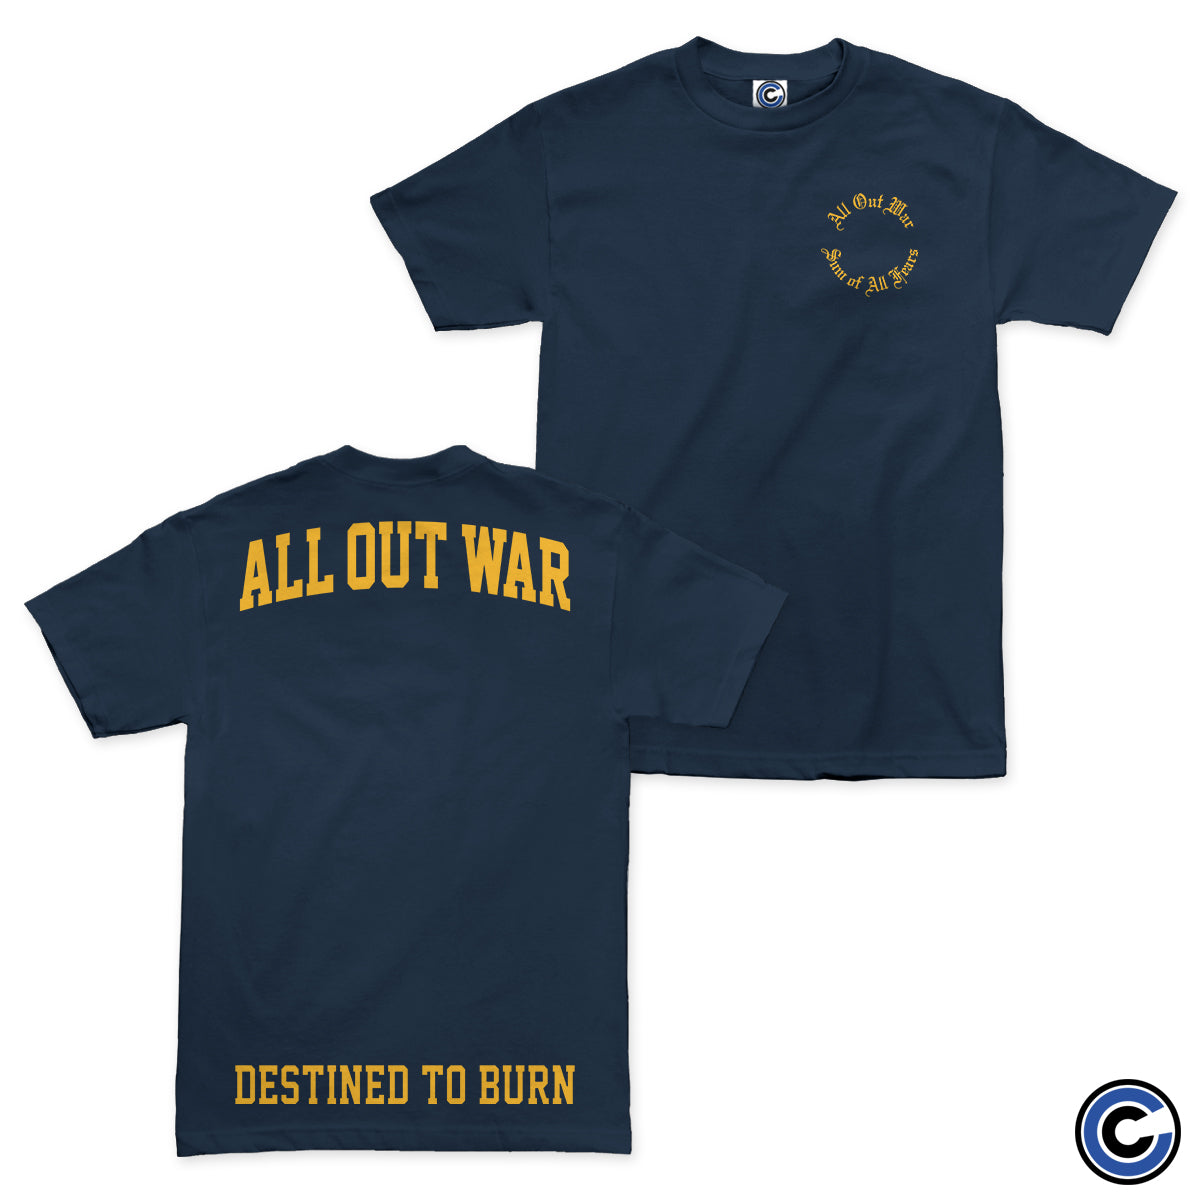 All Out War "Destined" Shirt